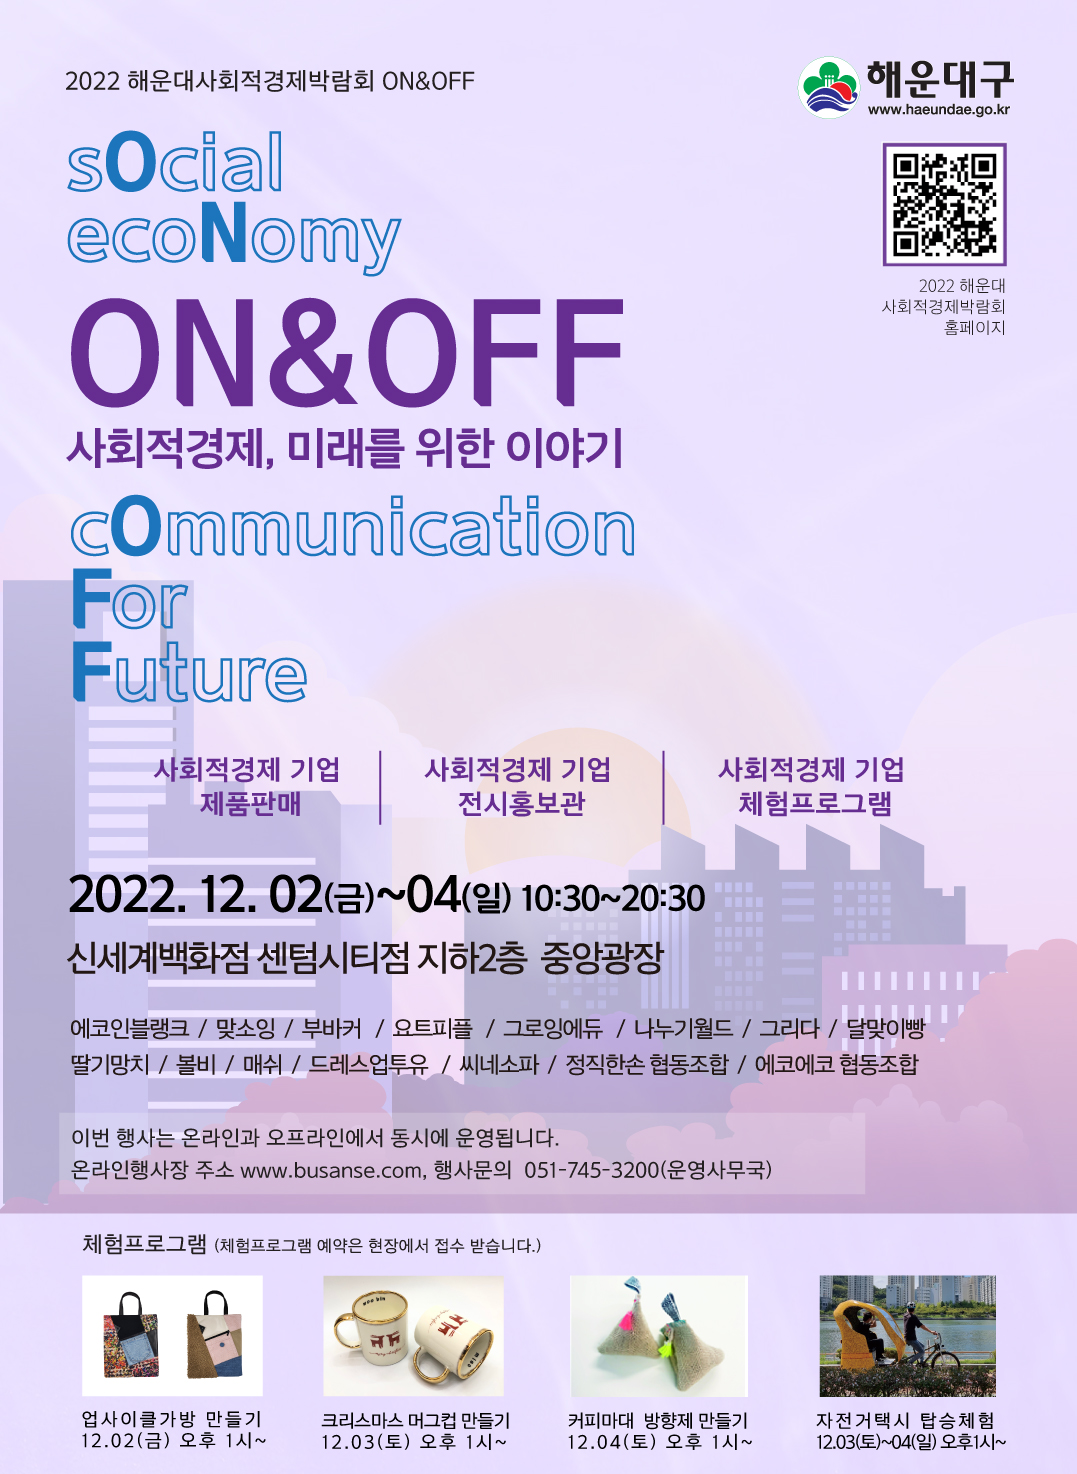 「해운대 온오프 사회적경제 박람회」 개최 1번째 이미지